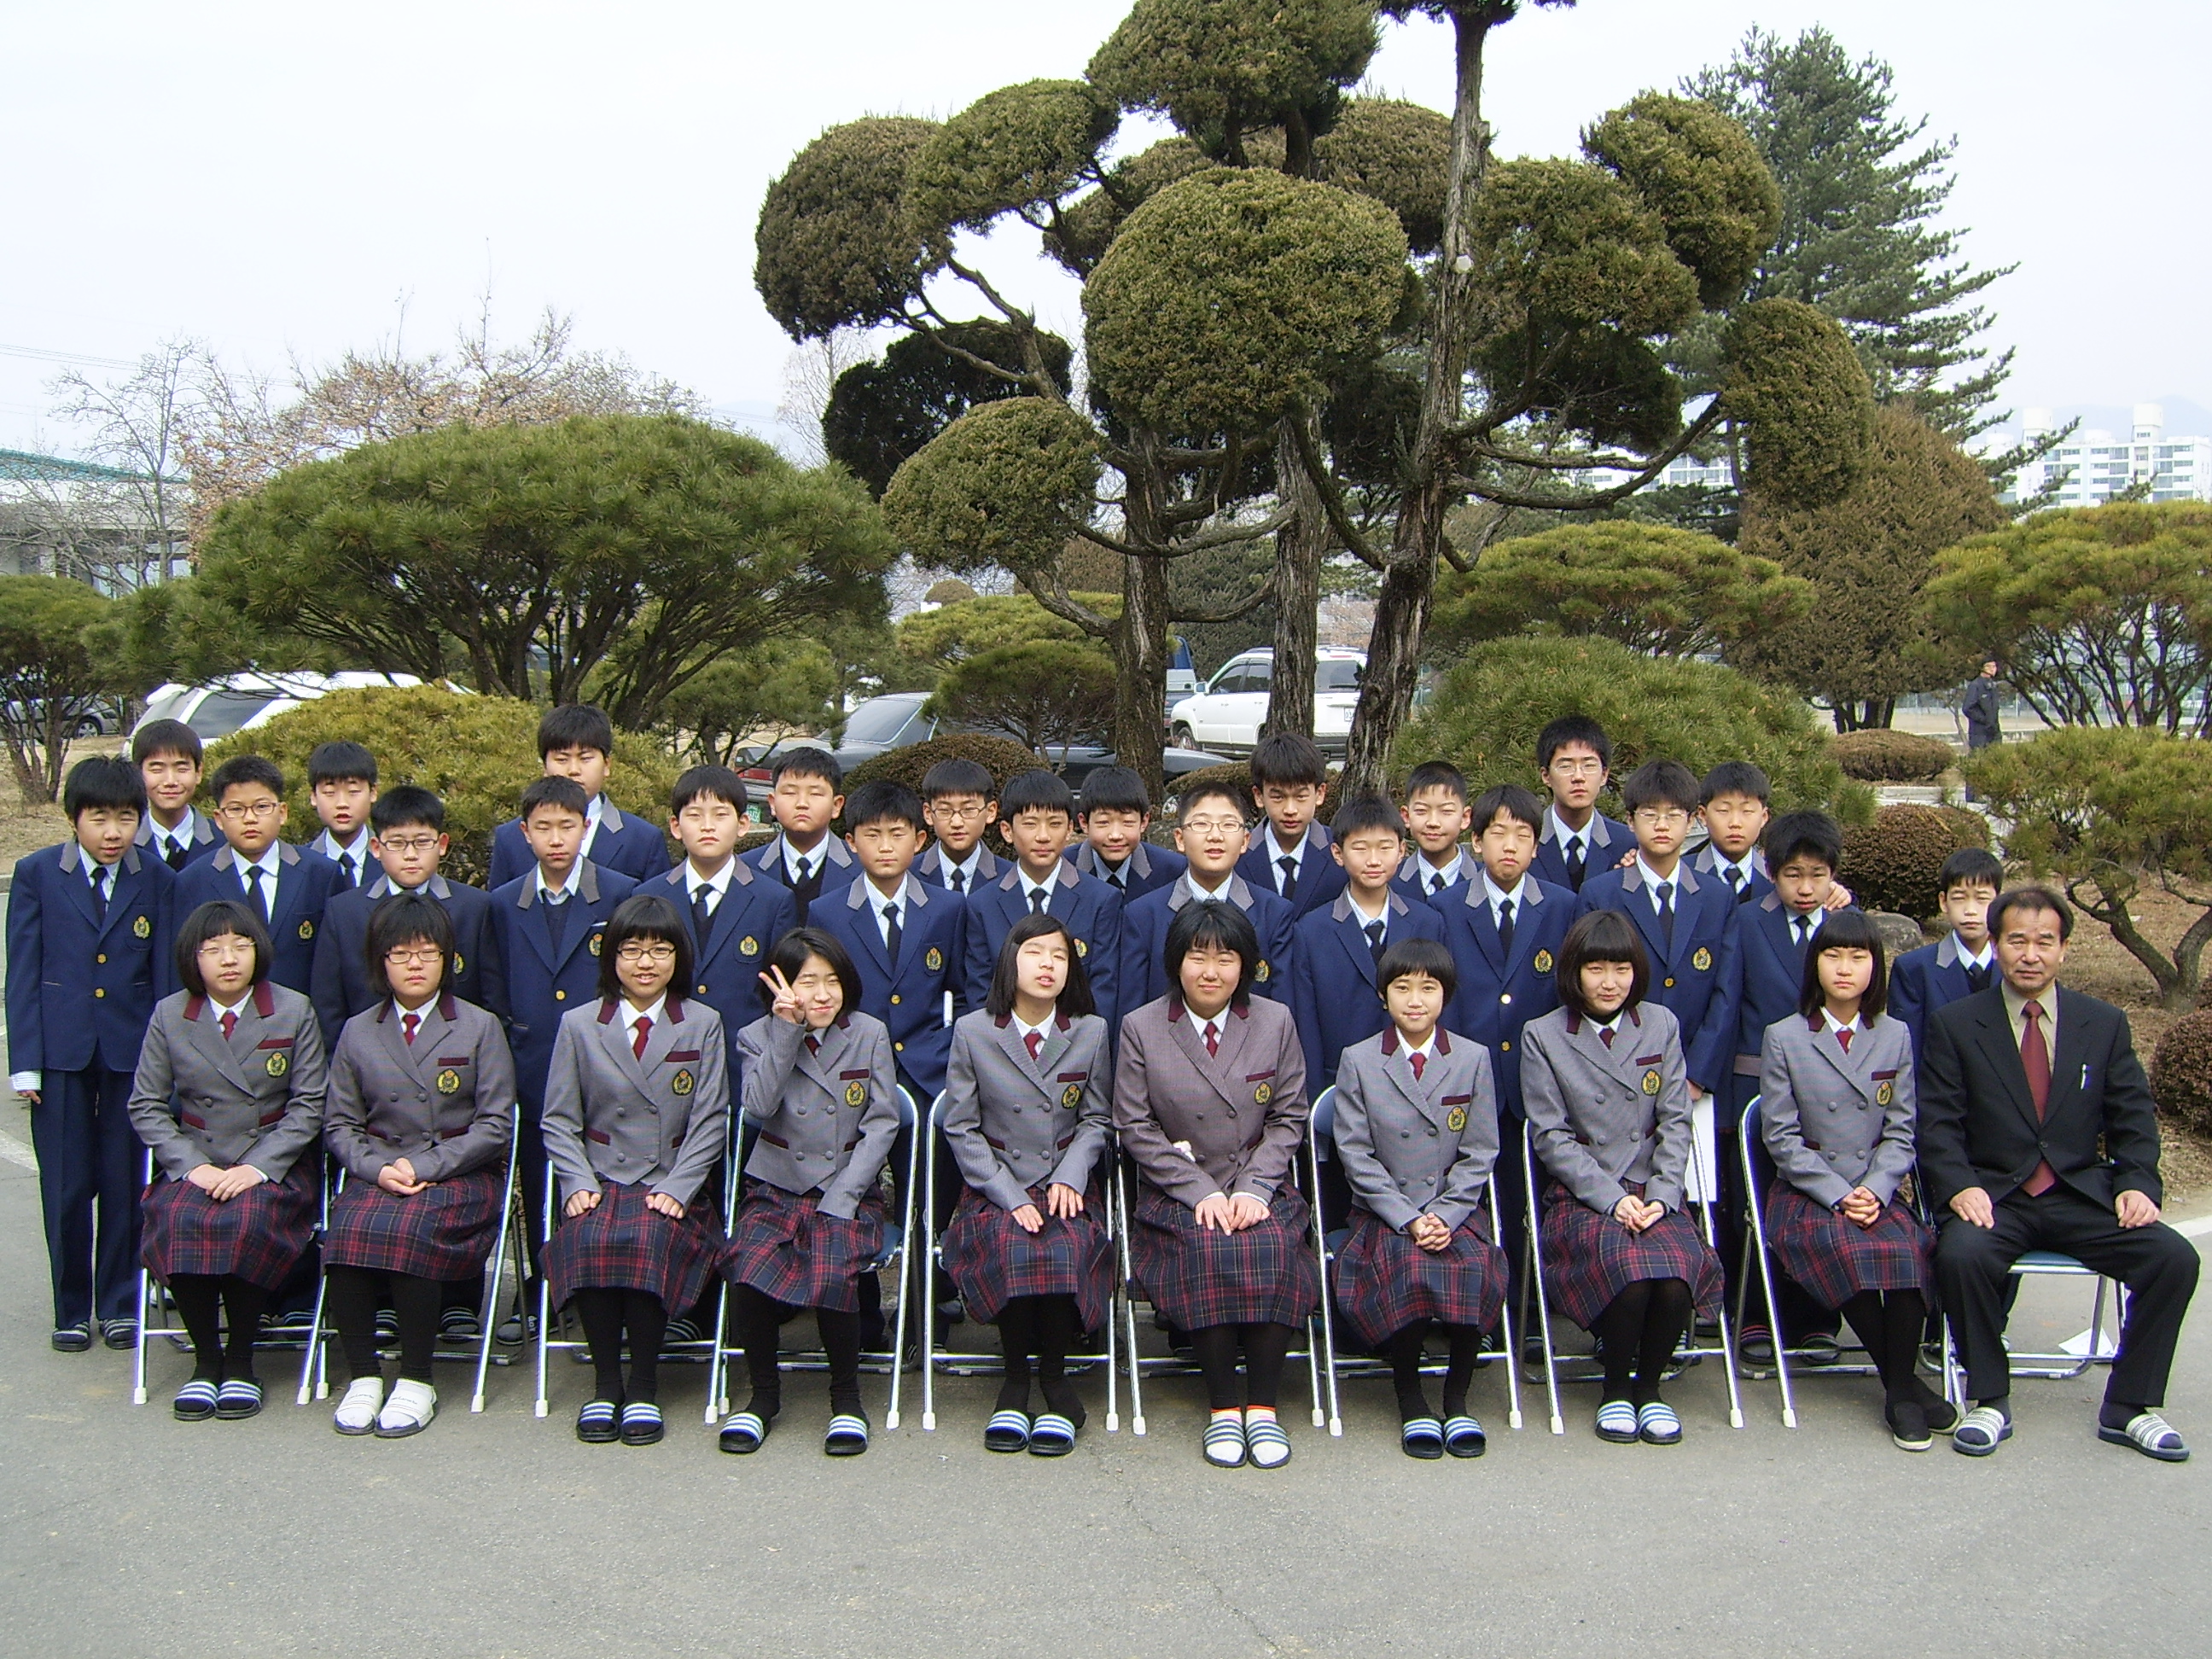 2008-입학식 (58).JPG